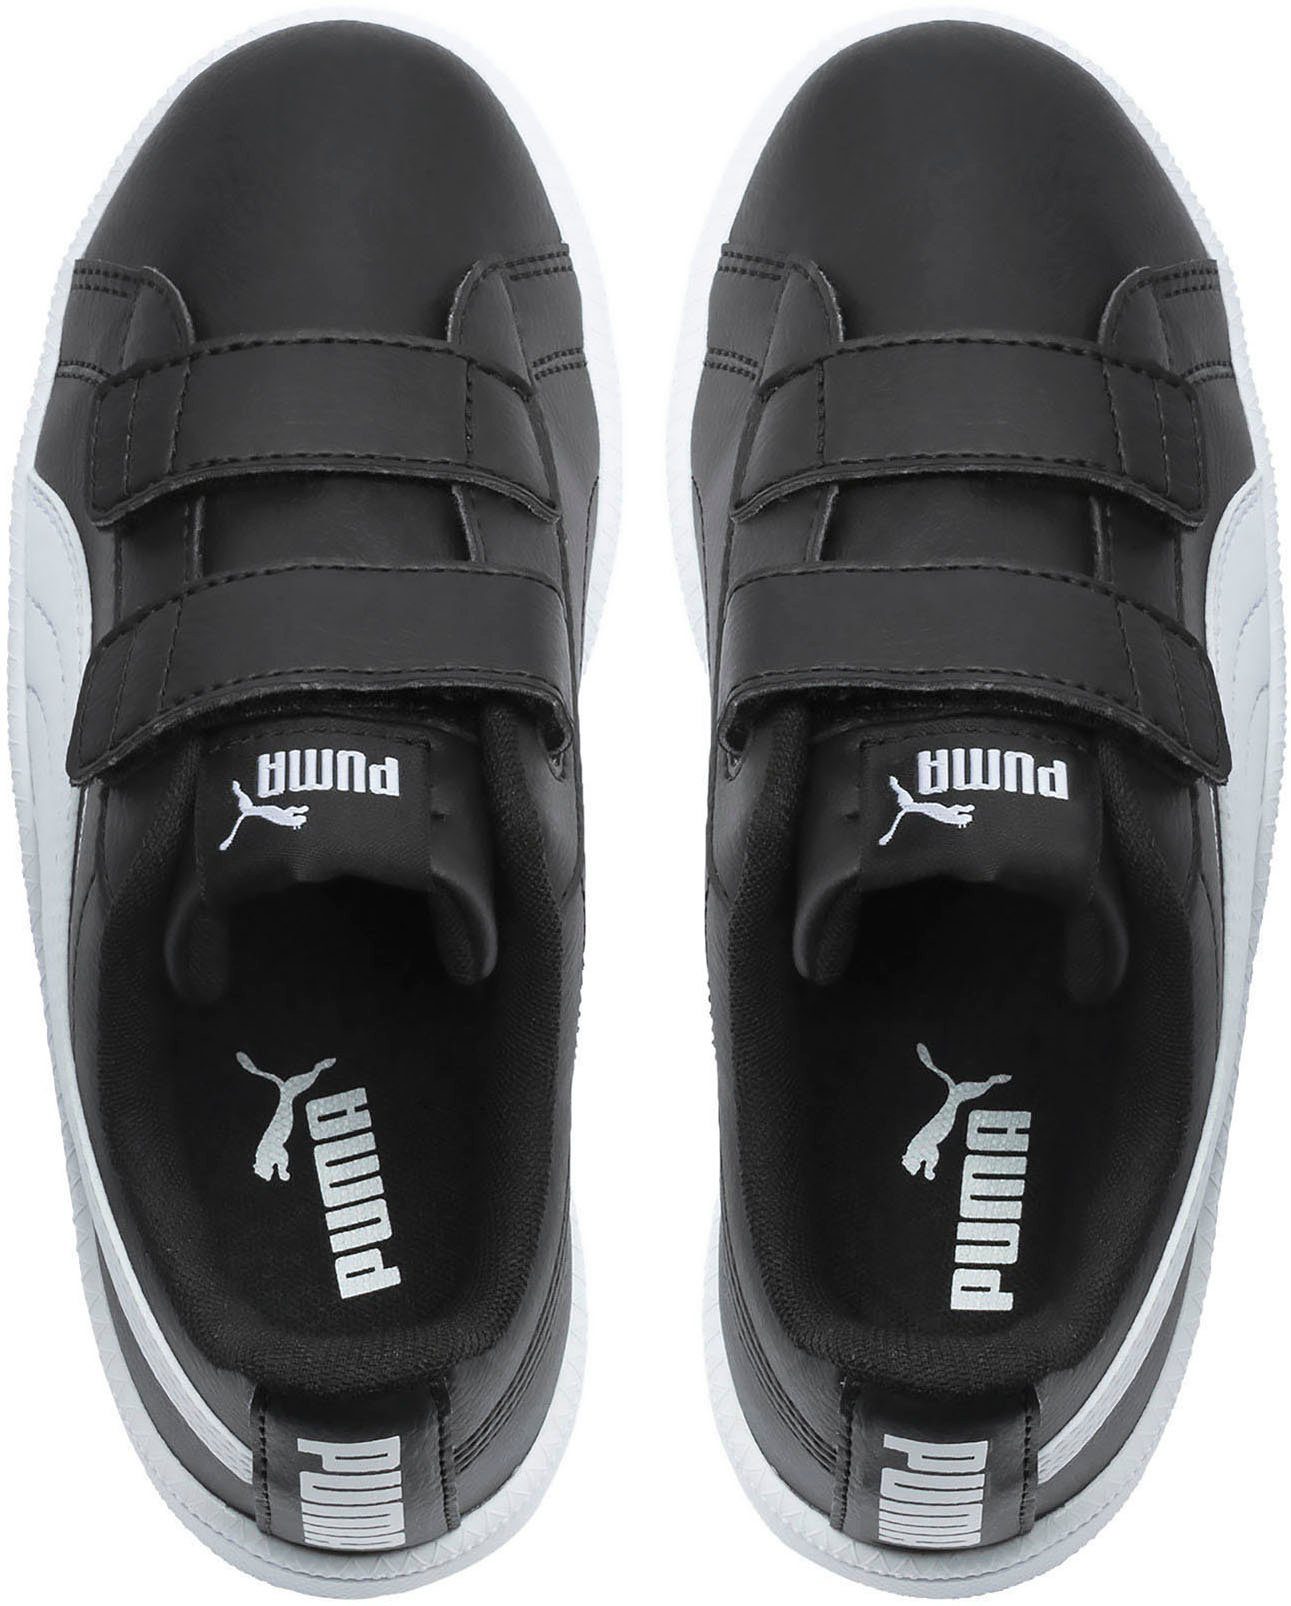 Klettverschluss Sneaker mit UP PUMA V PUMA schwarz-weiß PS